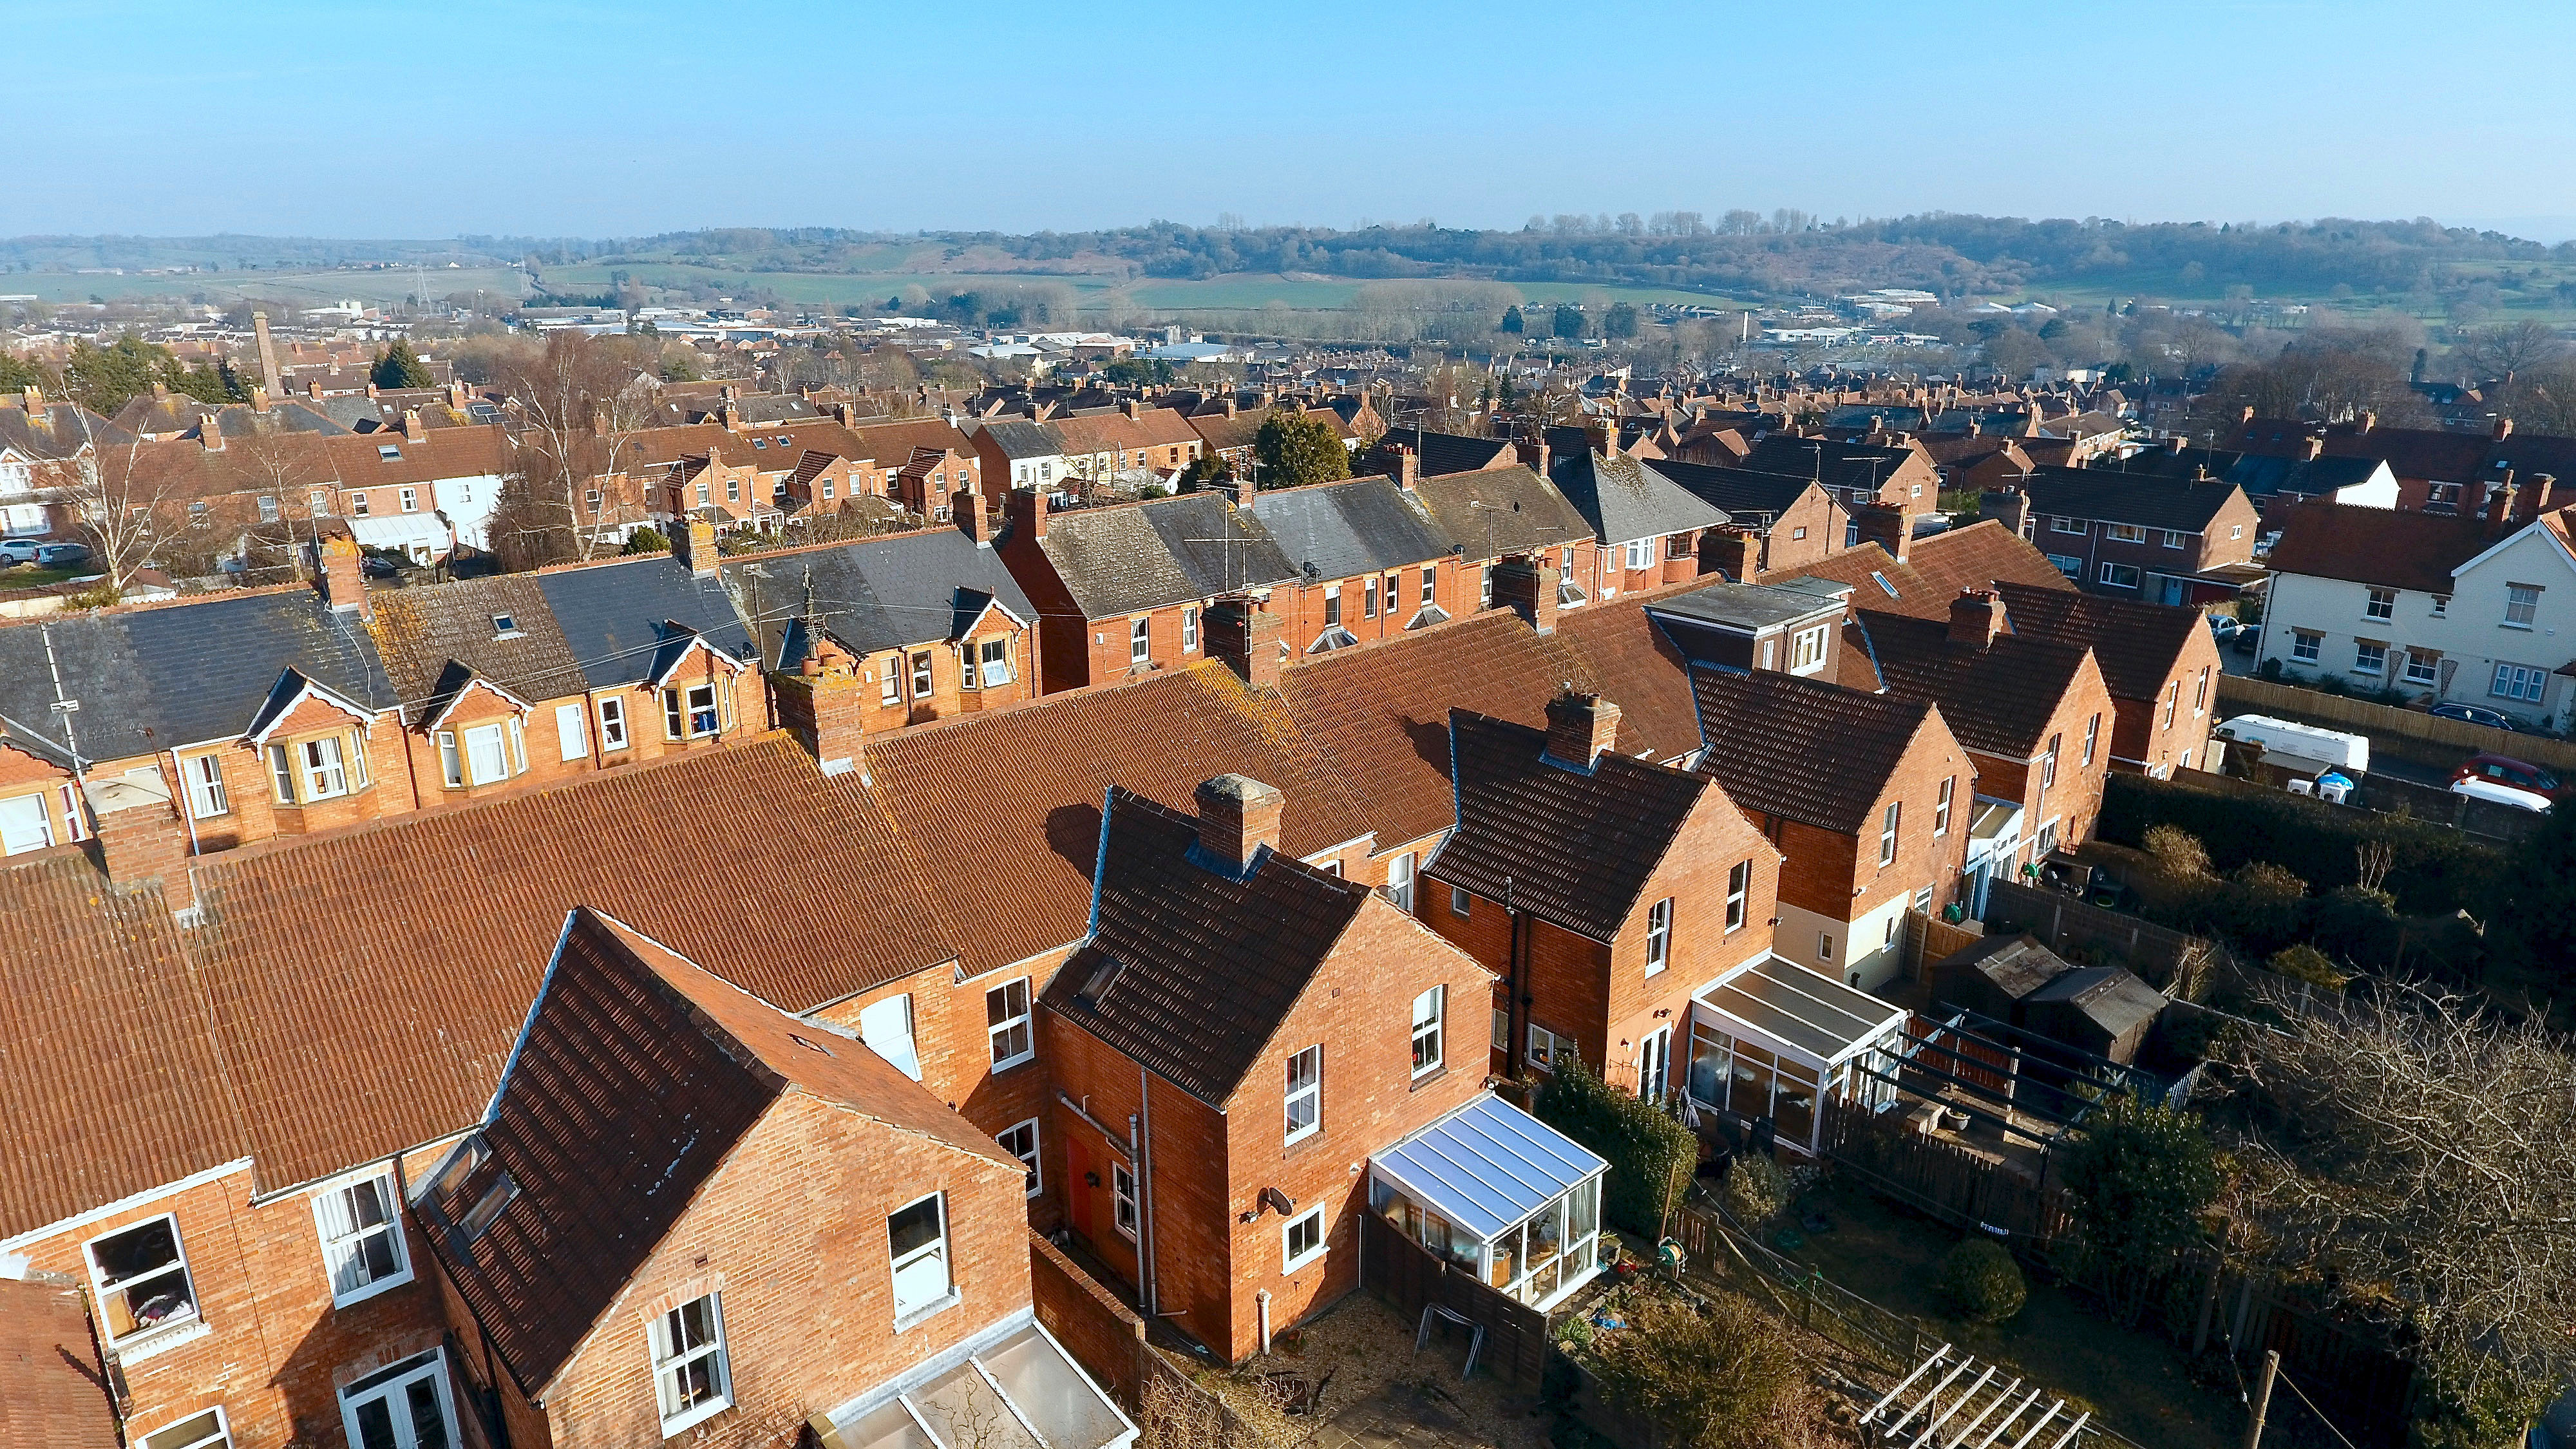 Aerial view of British housing development in Yeovil, UK